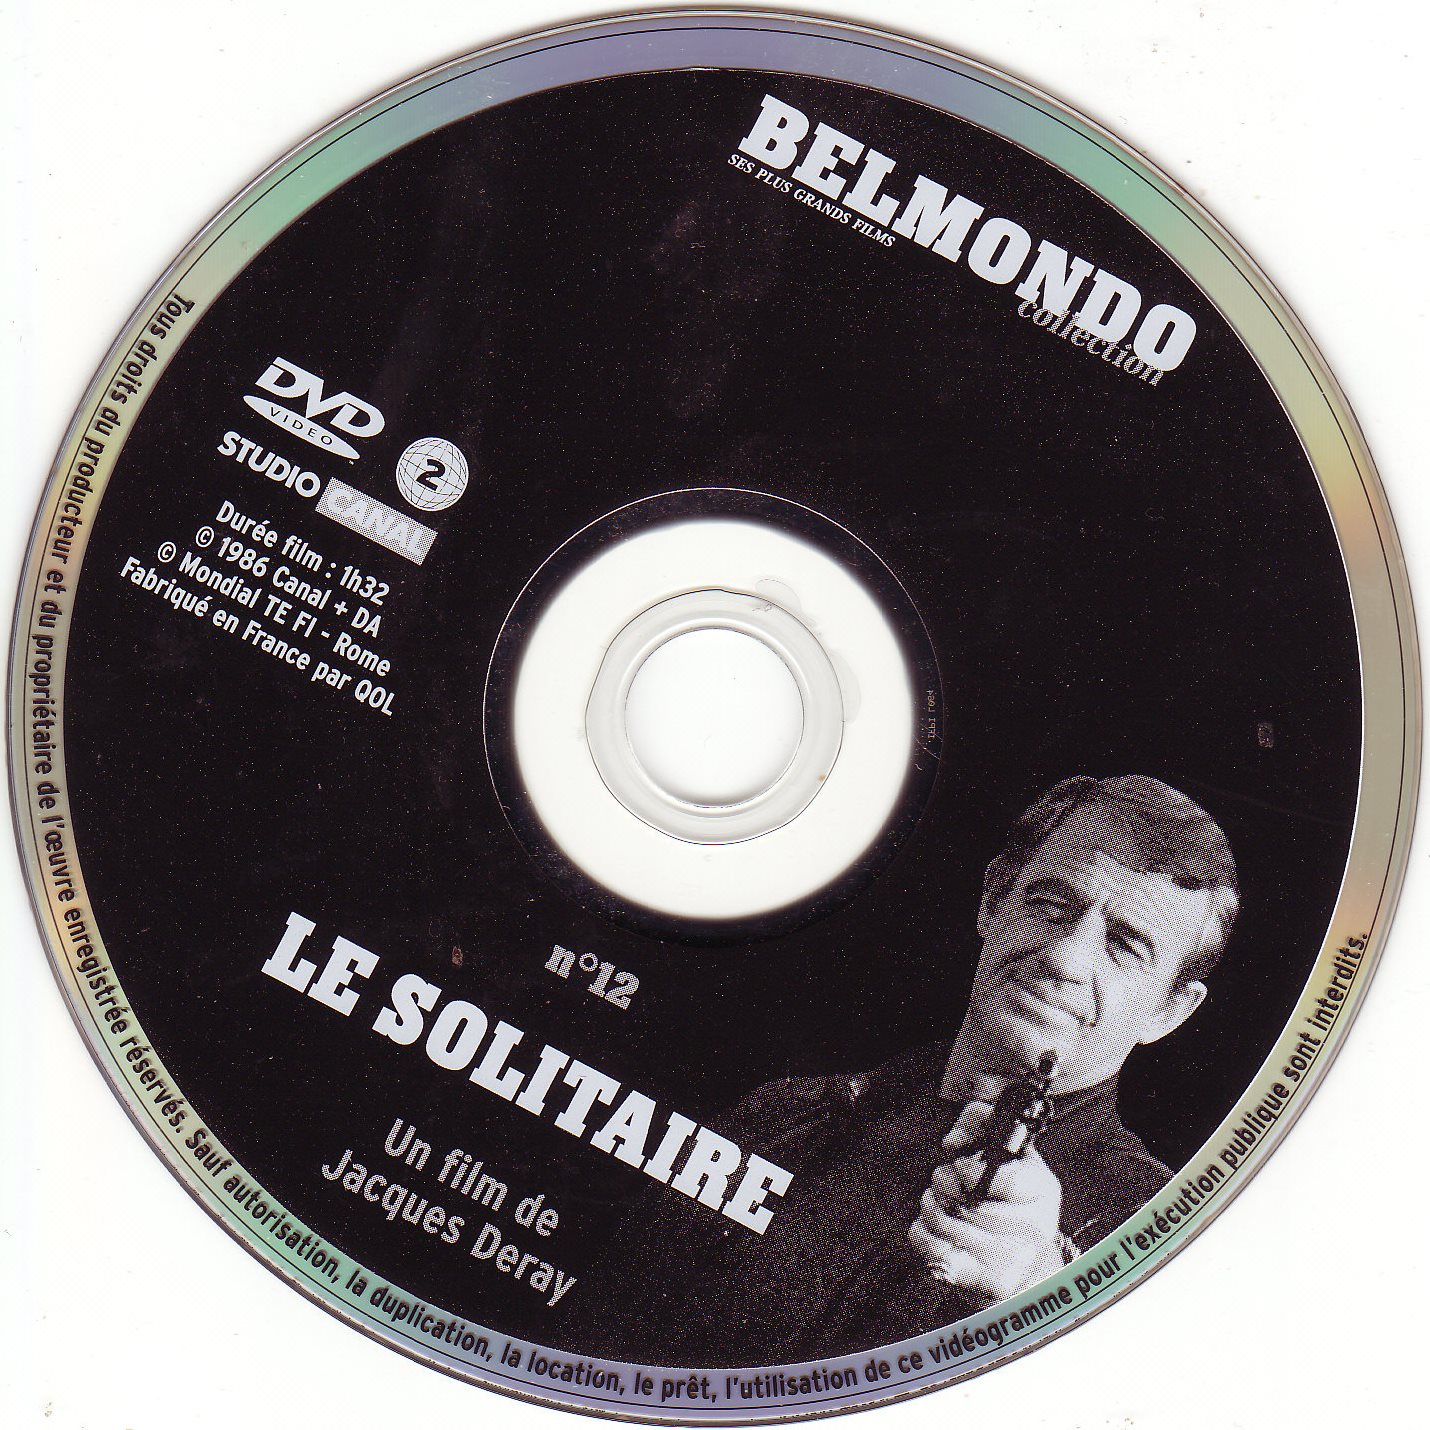 Le solitaire (Belmondo) v2